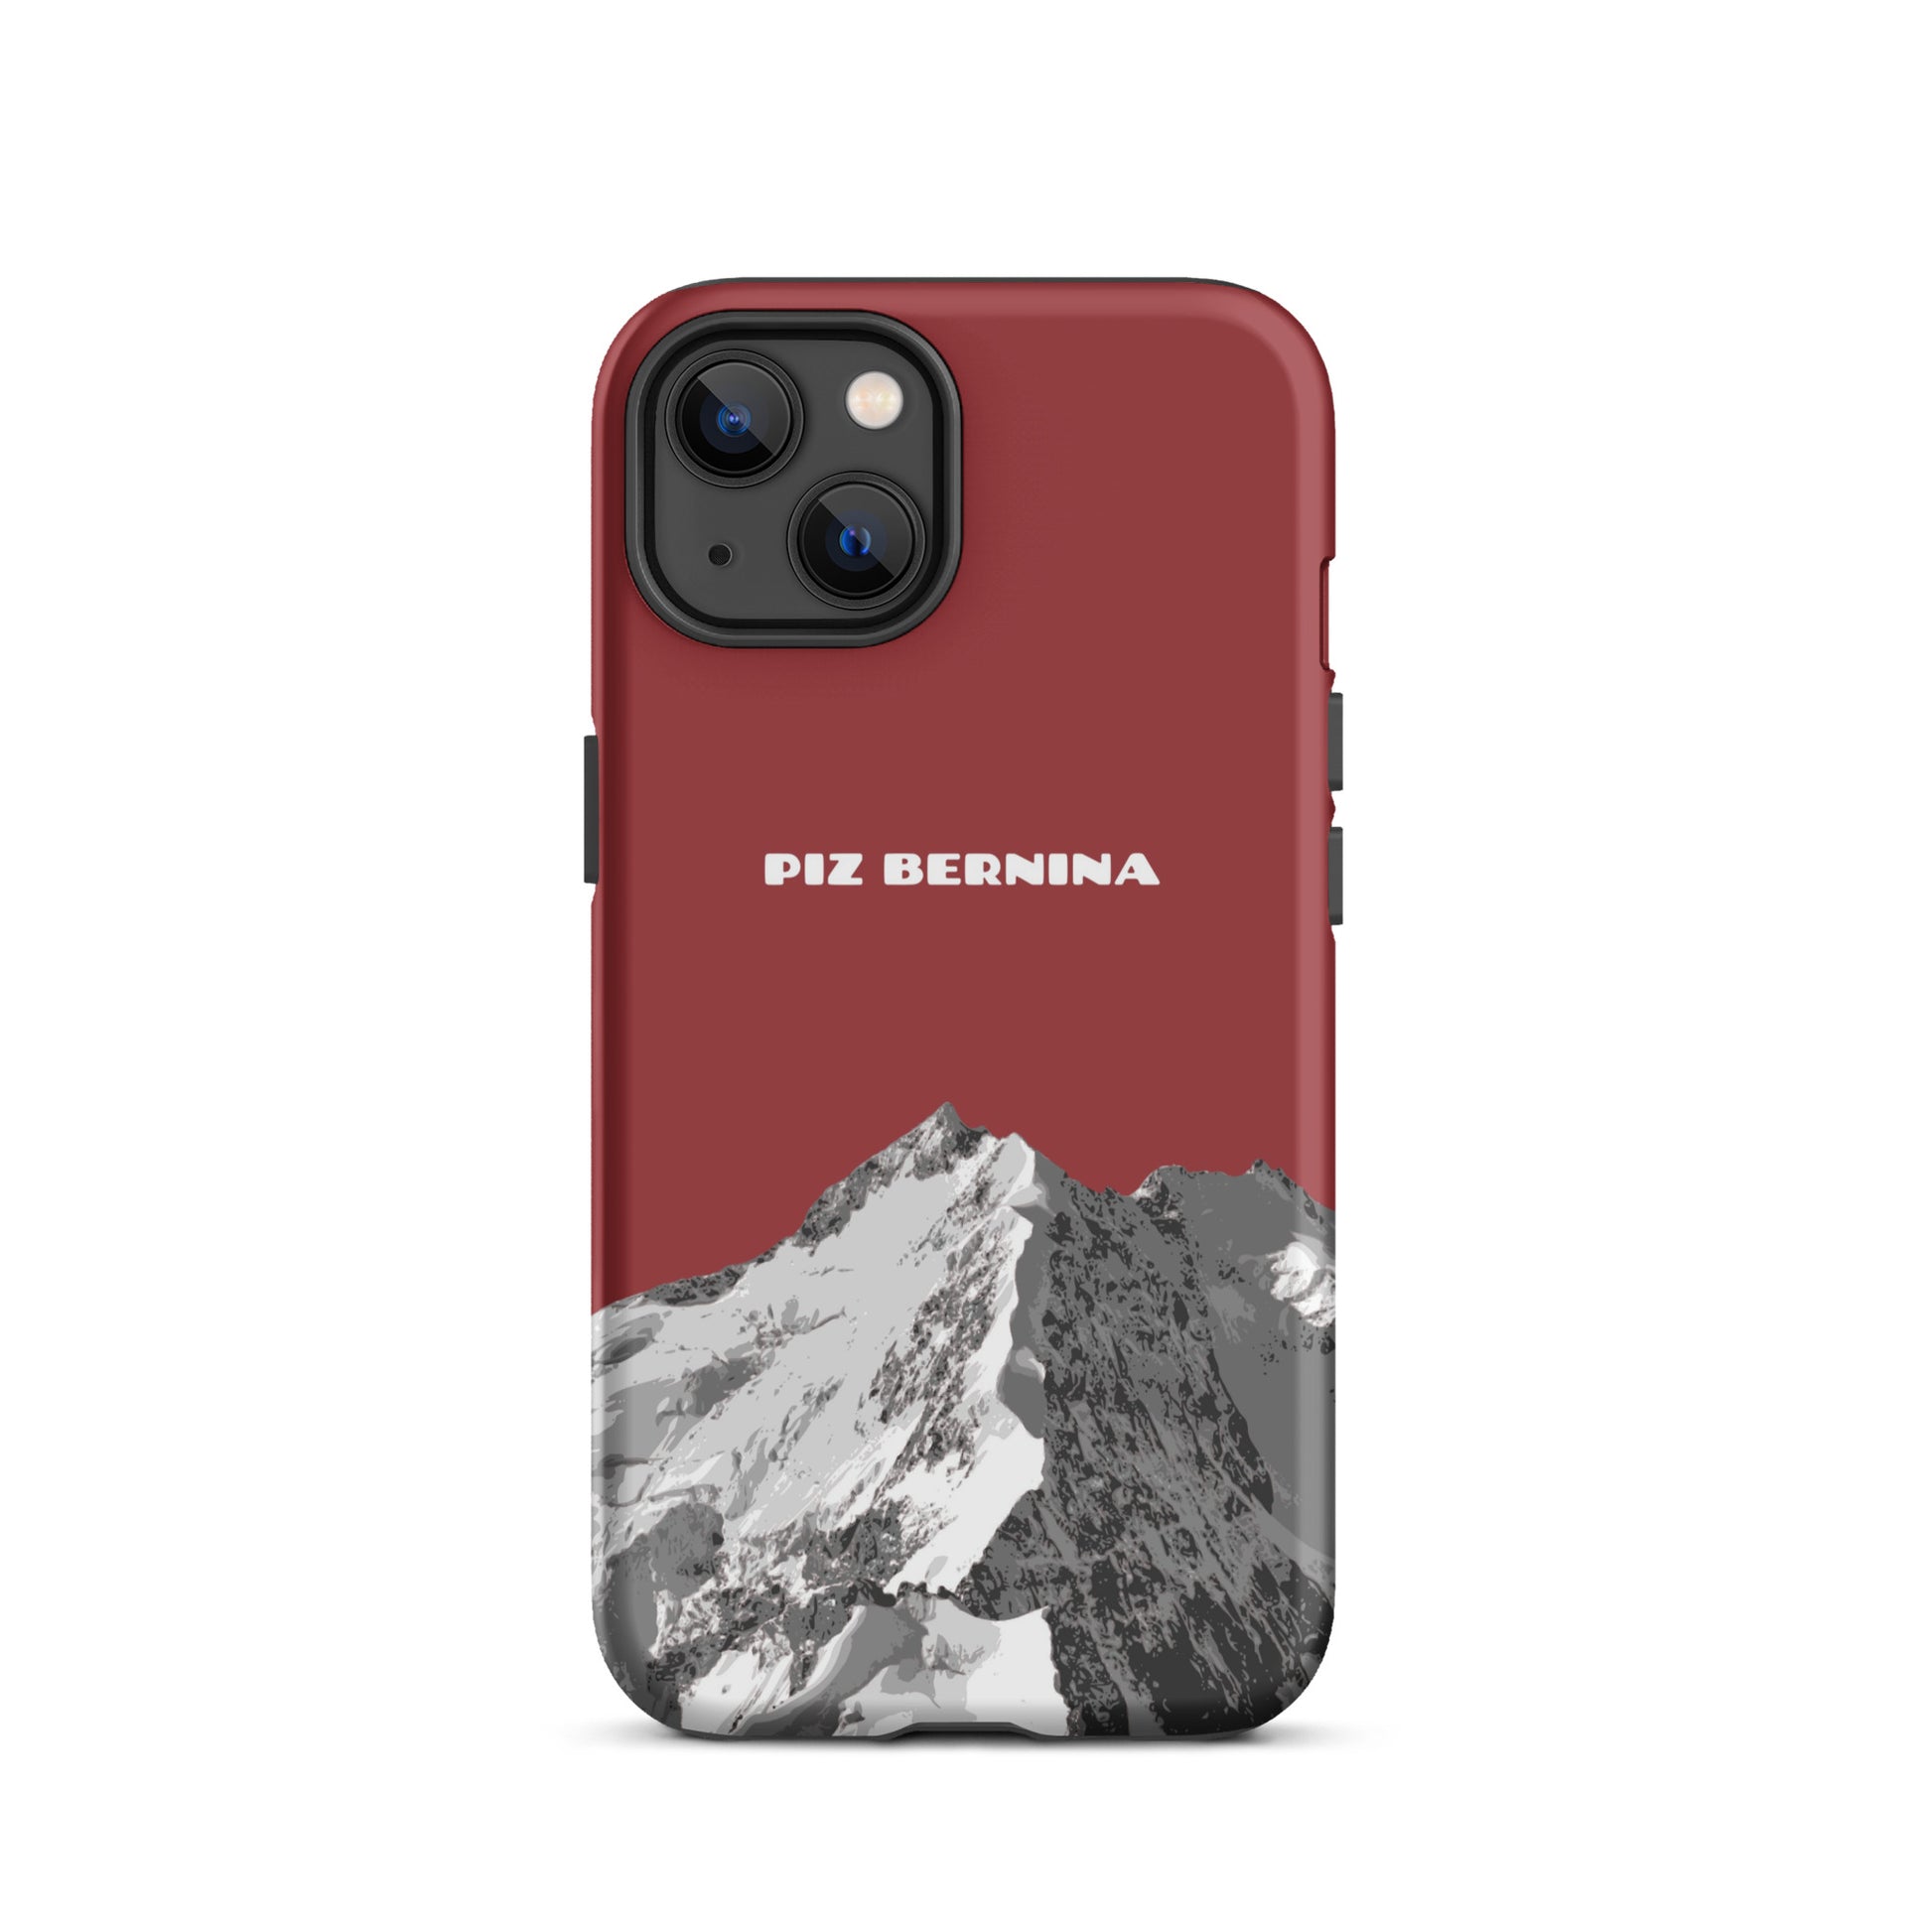 Hülle für das iPhone 13 von Apple in der Farbe Rot, dass den Piz Bernina in Graubünden zeigt.